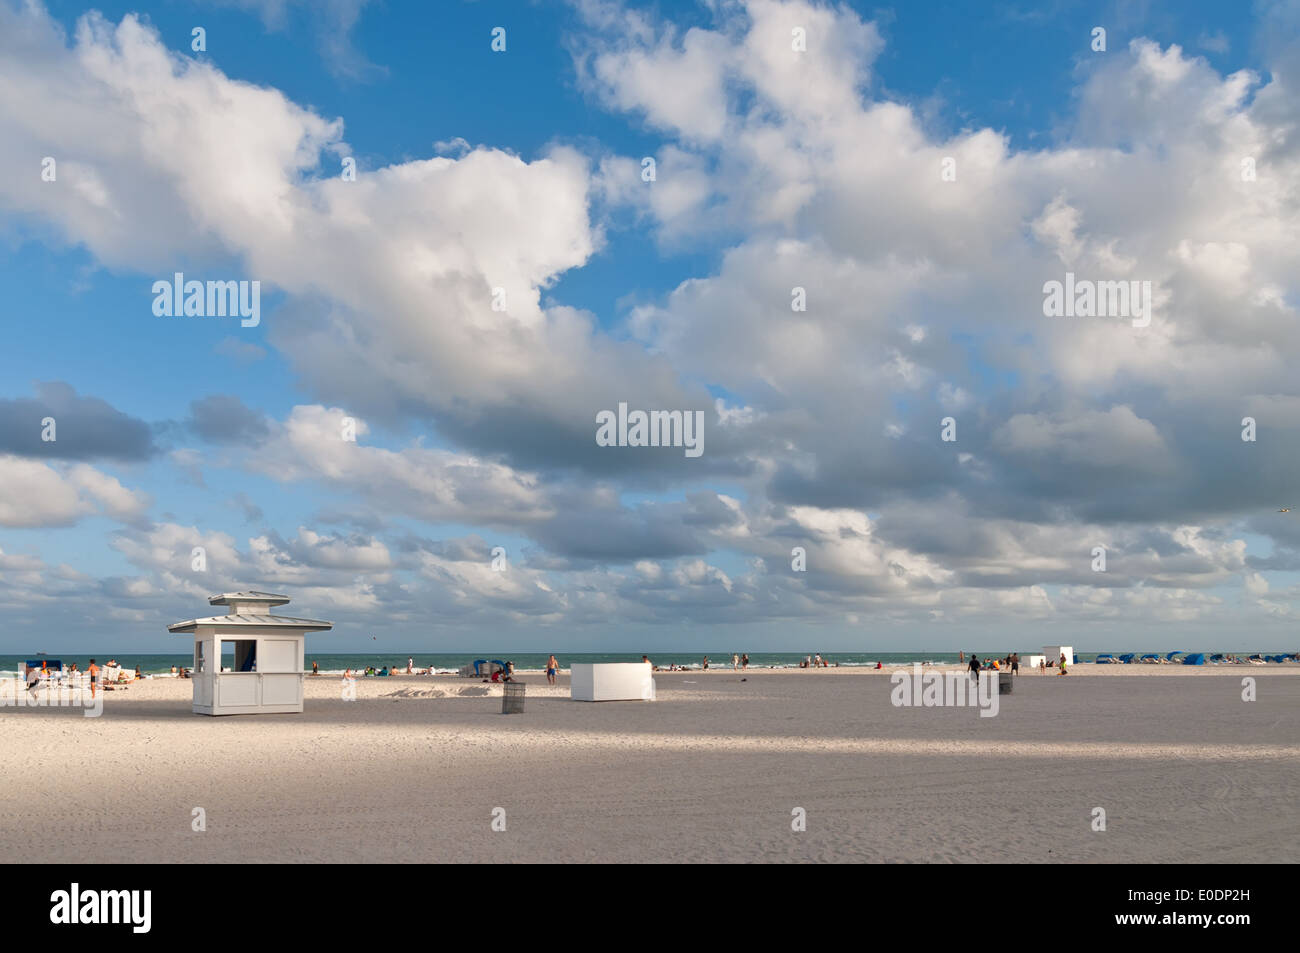 Miami Beach, USA. People enjoy their free time on beach in the city of Miami Beach. Stock Photo